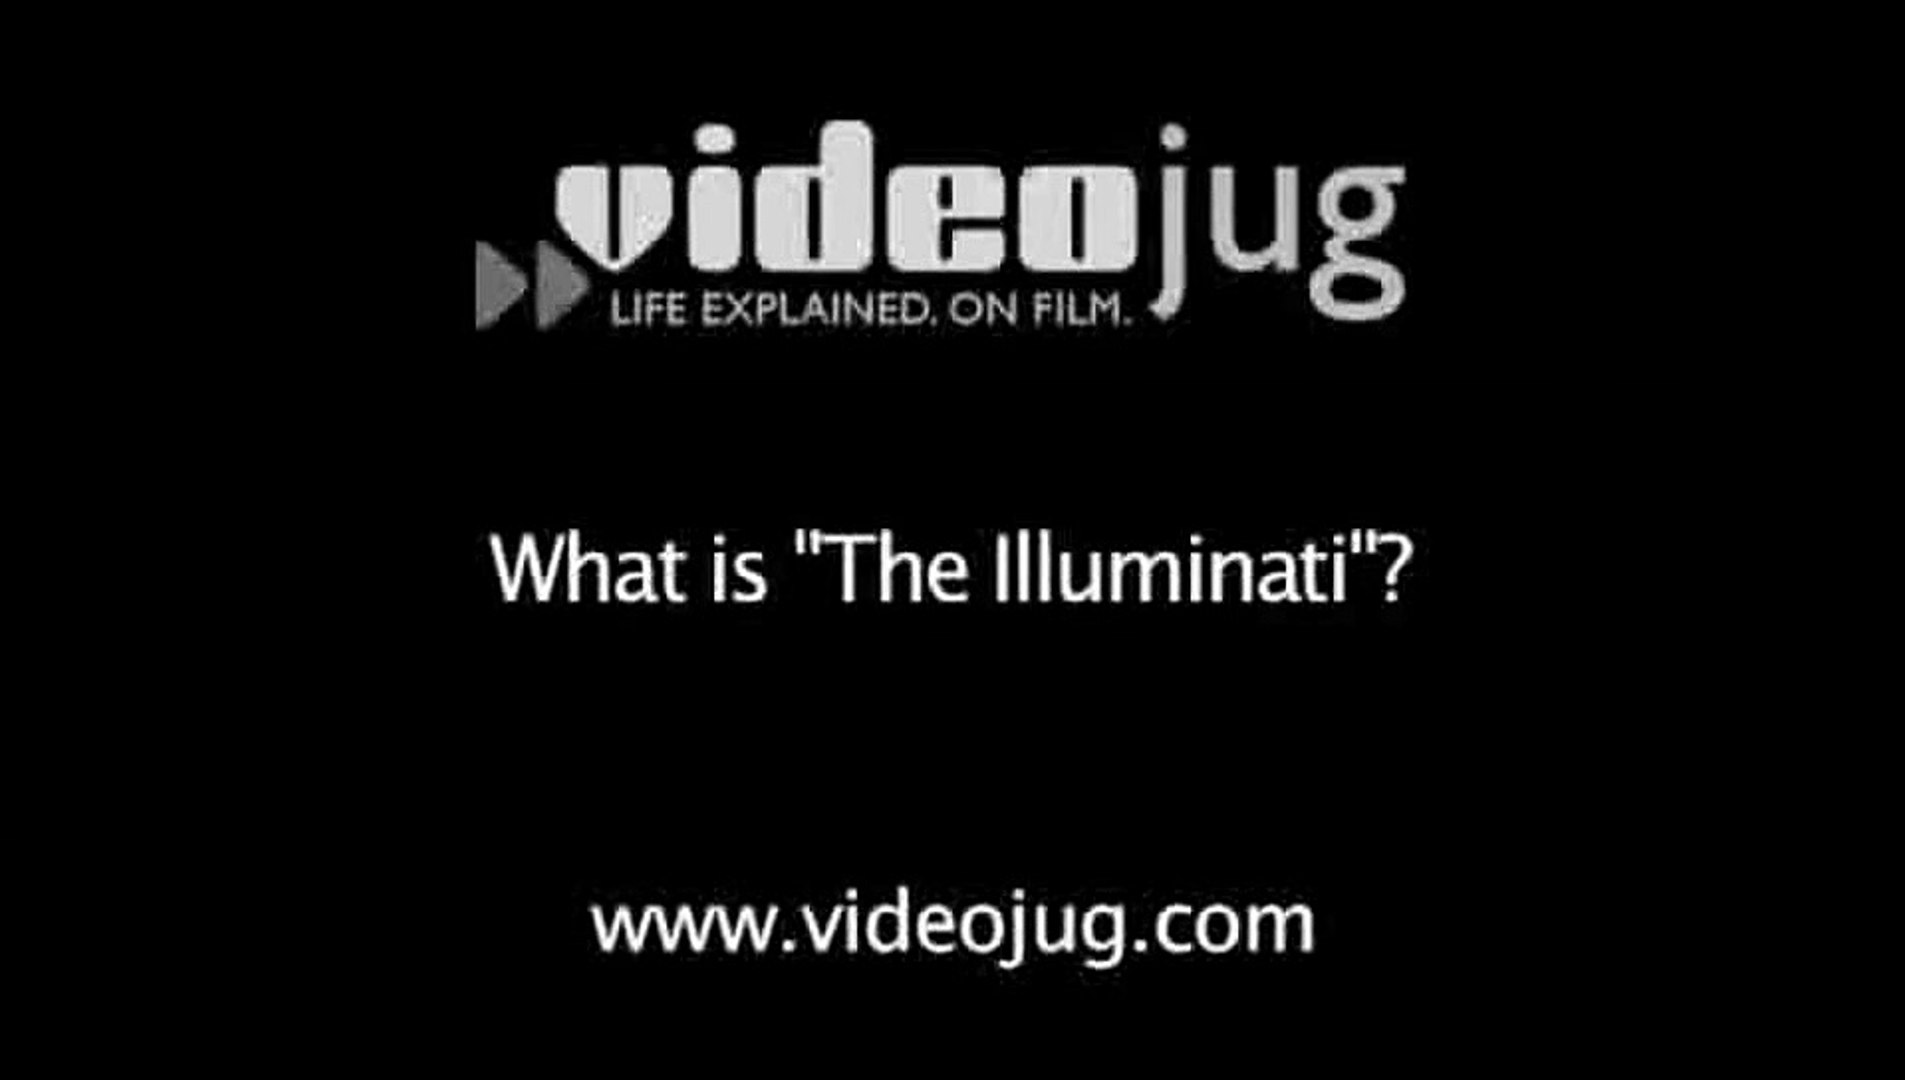 What is 'The Illuminati'?: The Illuminati